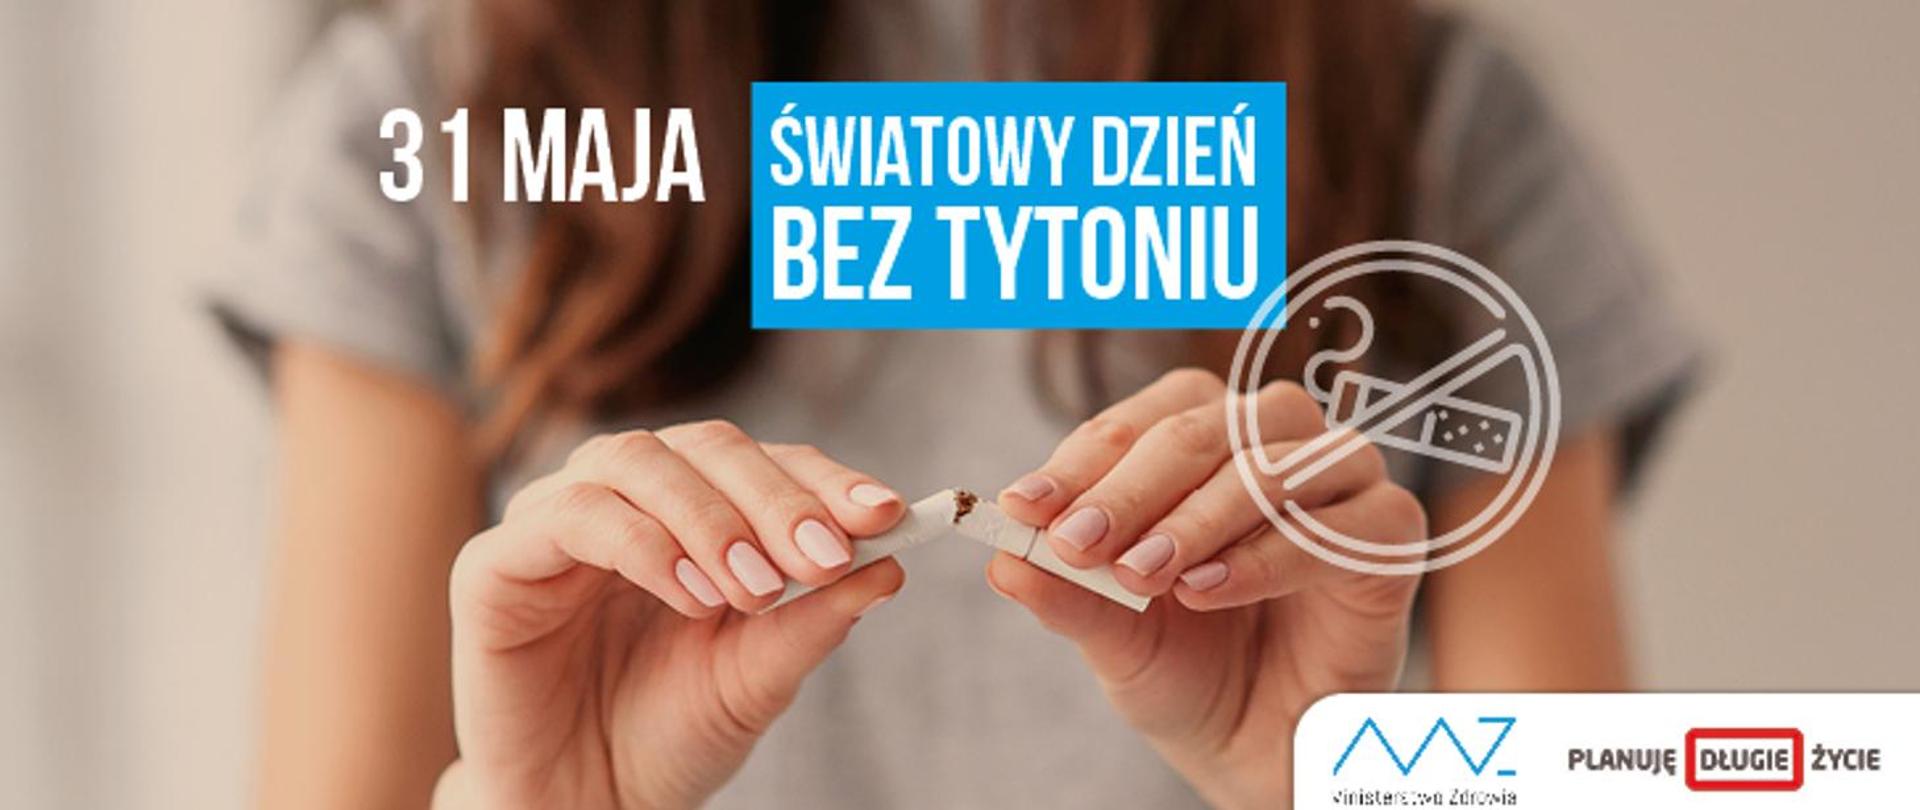 31 maja - Światowy Dzień Bez Tytoniu